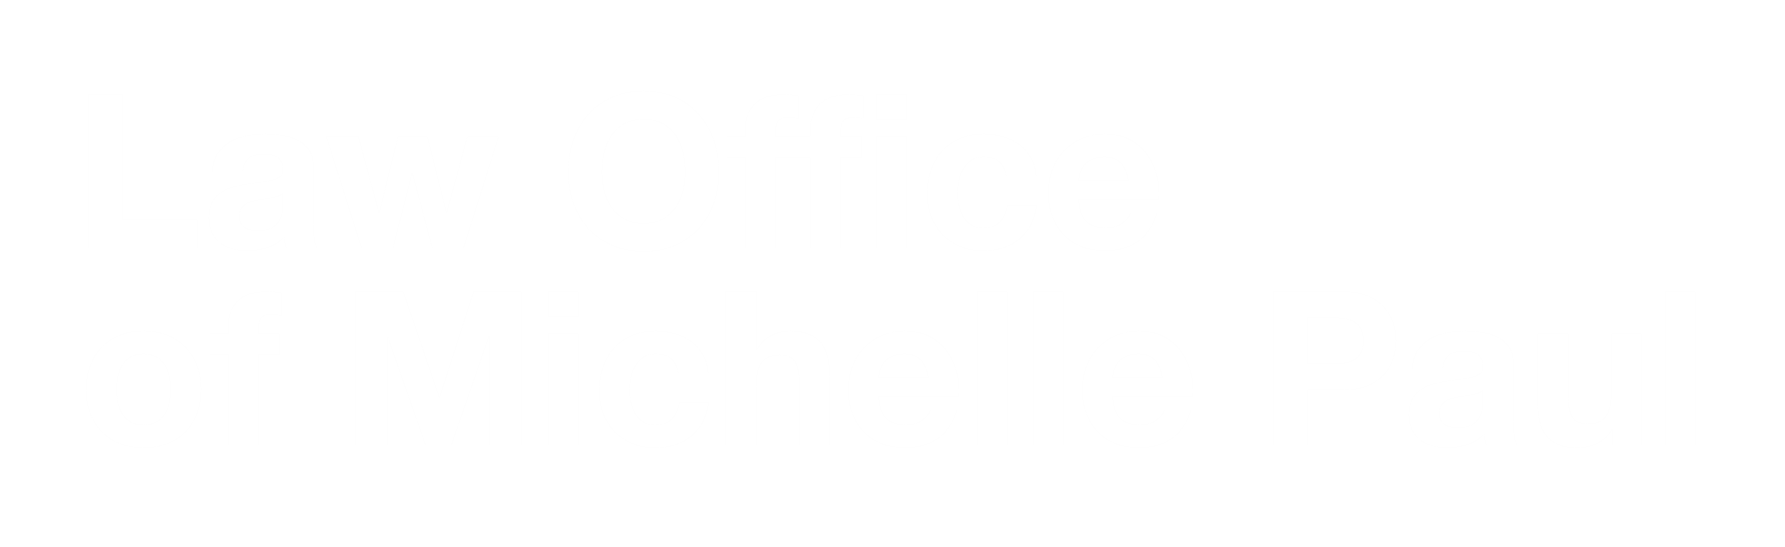 law office of michelle paul logo